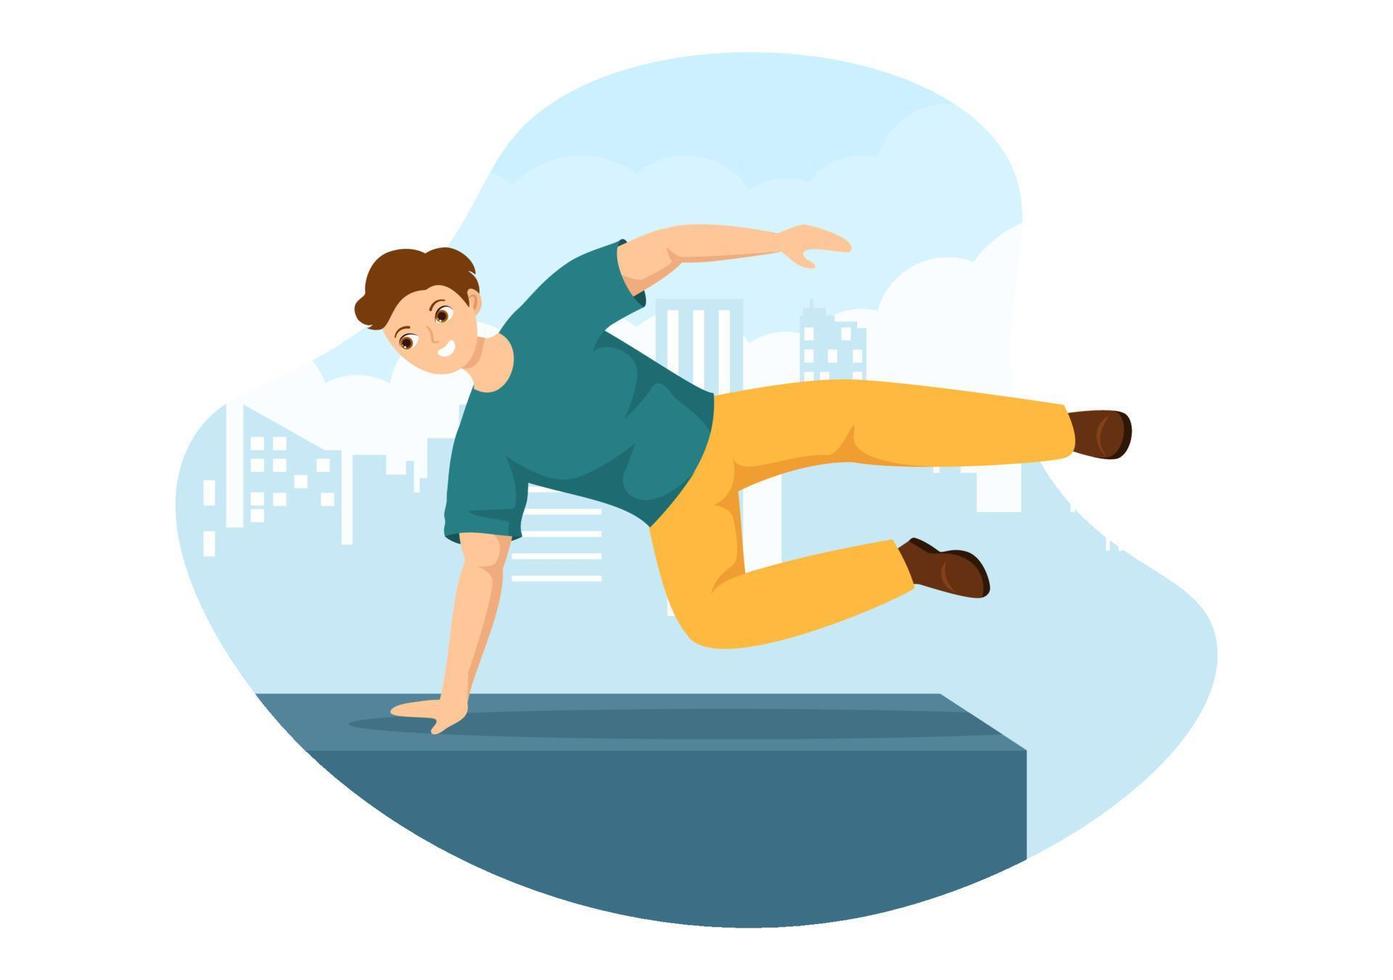 esportes de parkour com homens jovens pulando paredes e barreiras nas ruas da cidade e edifícios em ilustração de modelo desenhado à mão plana dos desenhos animados vetor